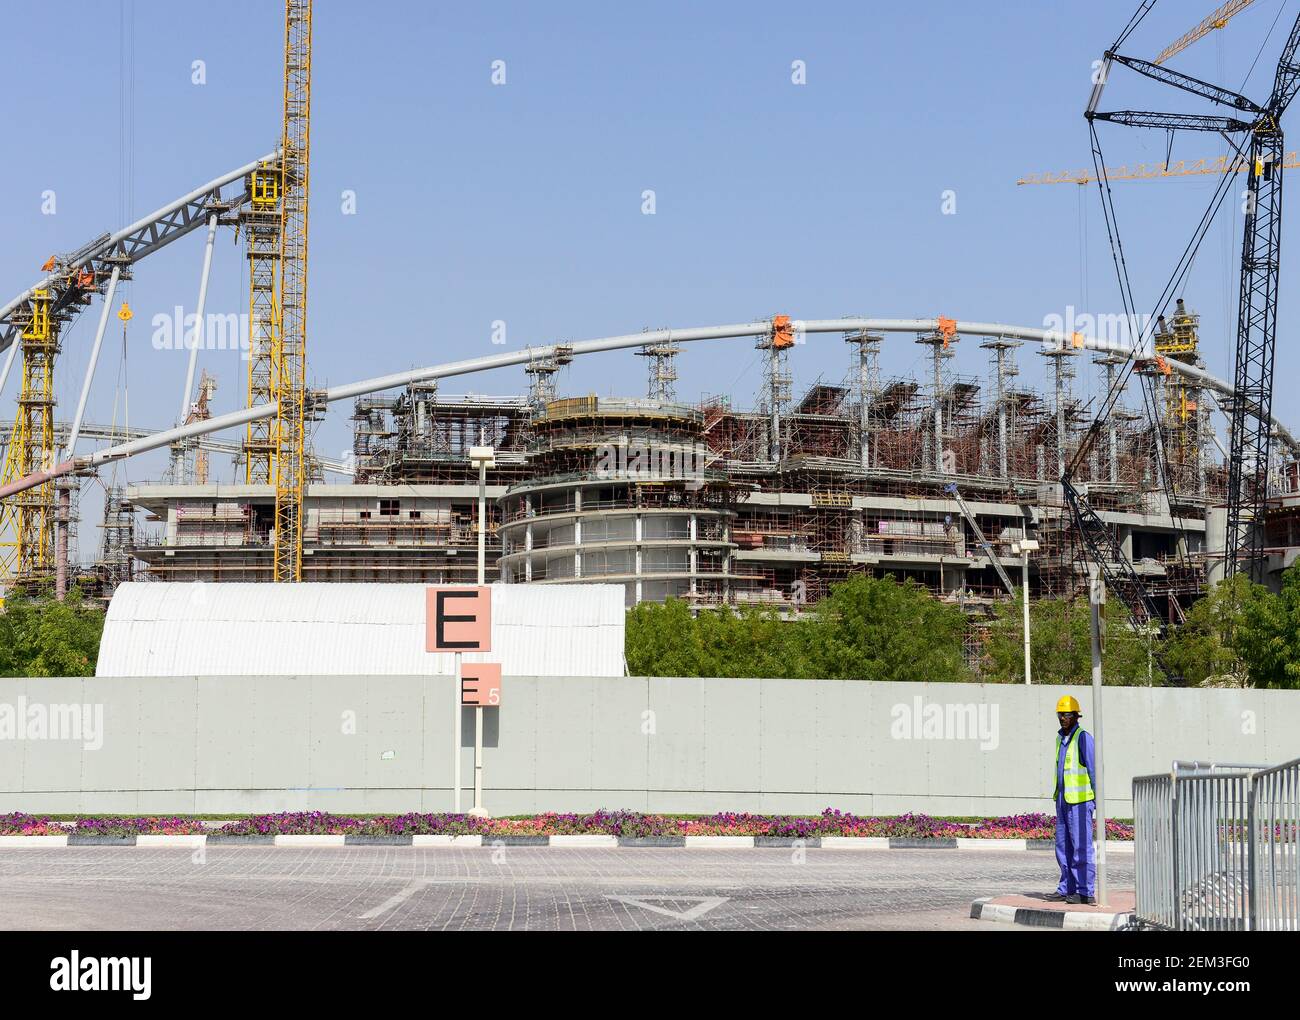 QATAR, Doha, obra Khalifa International Stadium para la Copa Mundial de la FIFA 2022, construido por el contratista y midmac sixt / contrato KATAR, Doha, Baustelle Khalifa International Stadium fuer die Fussballweltmeisterschaft FIFA 2022. Foto de stock